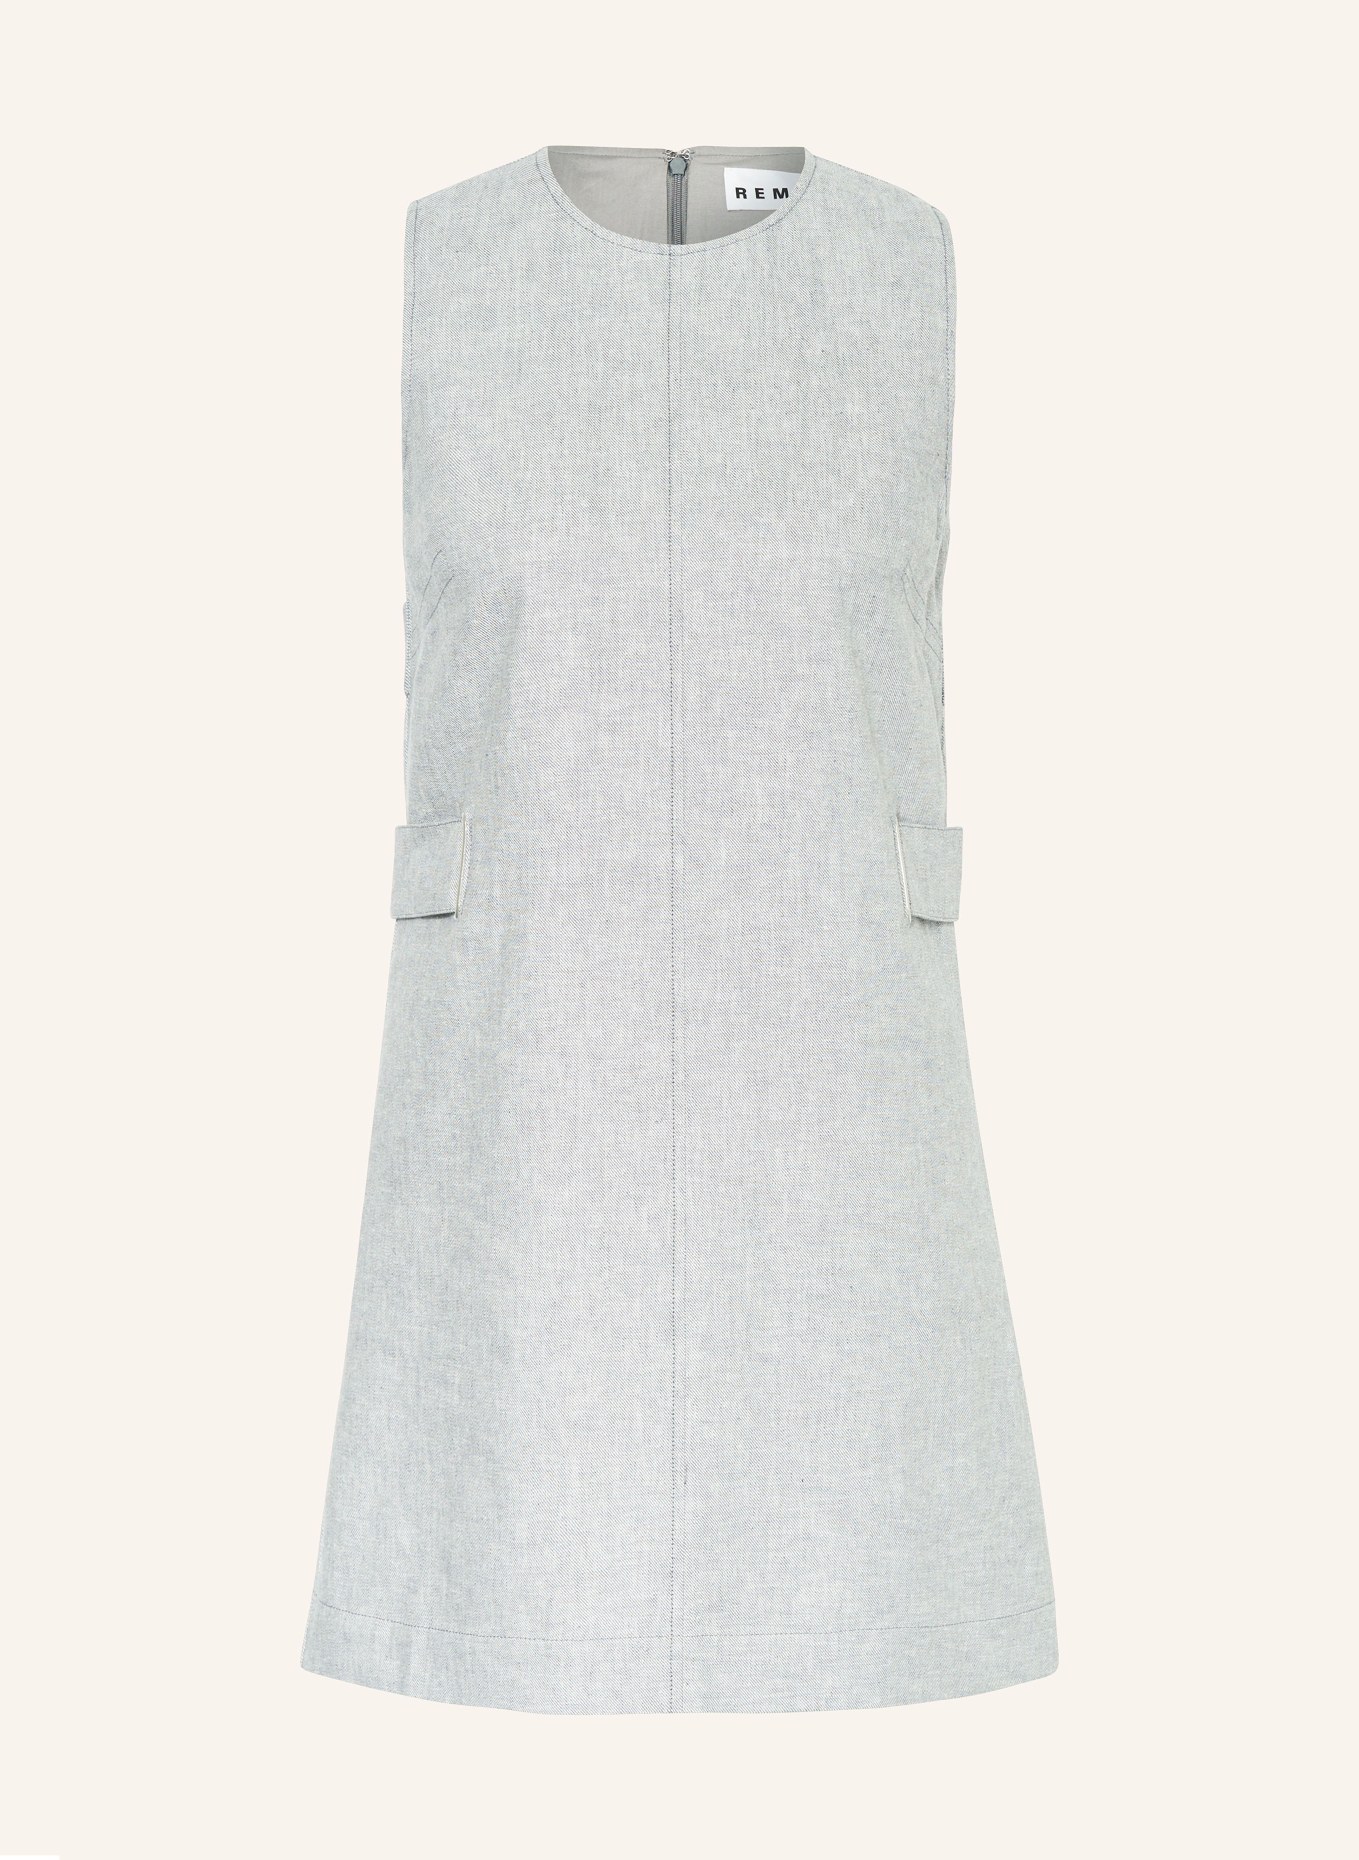 REMAIN Kleid mit Leinen, Farbe: GRAU/ WEISS (Bild 1)